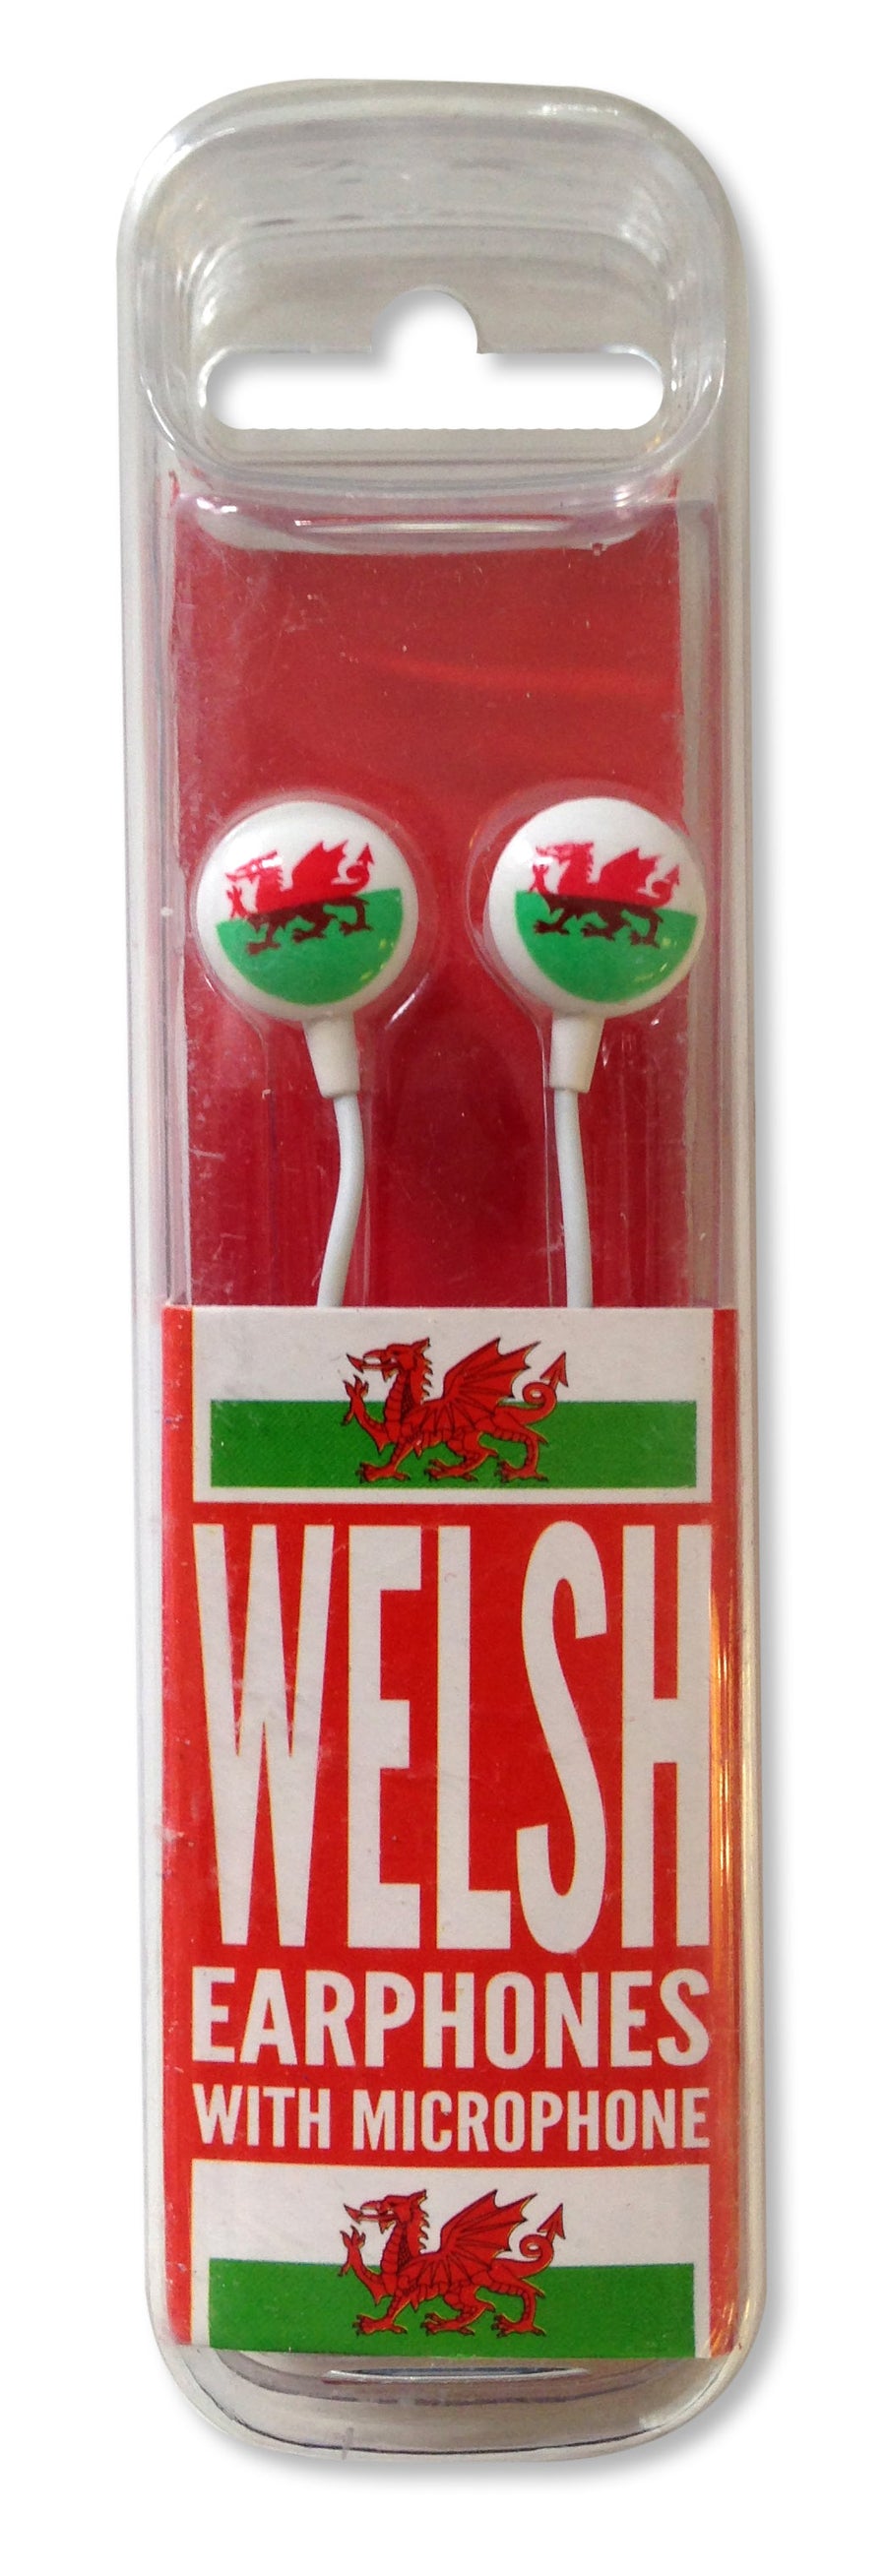 Welsh Earphones